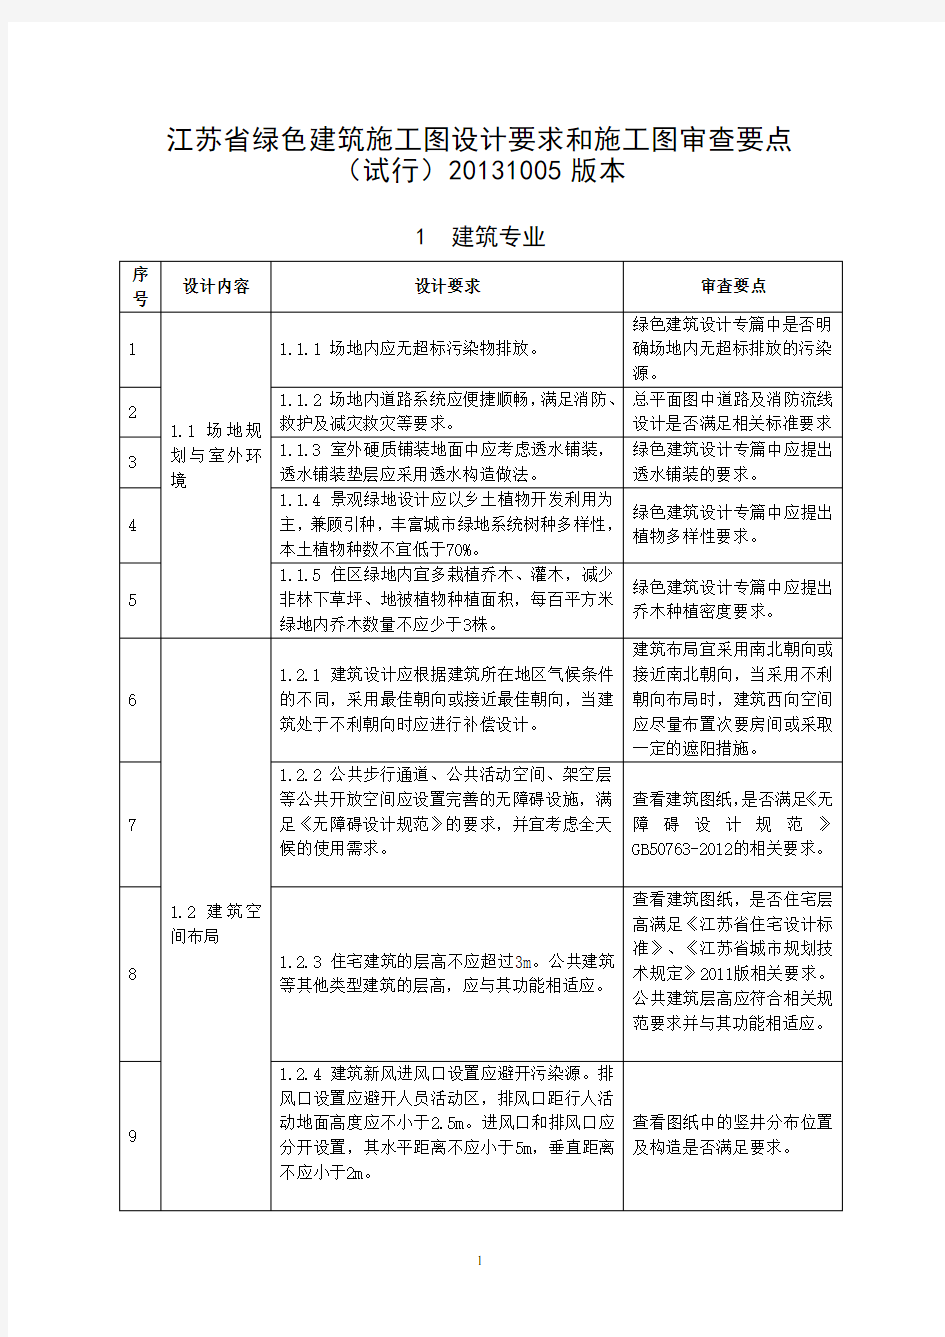 《江苏省绿色建筑施工图设计要求和施工图审查要点(试行)》